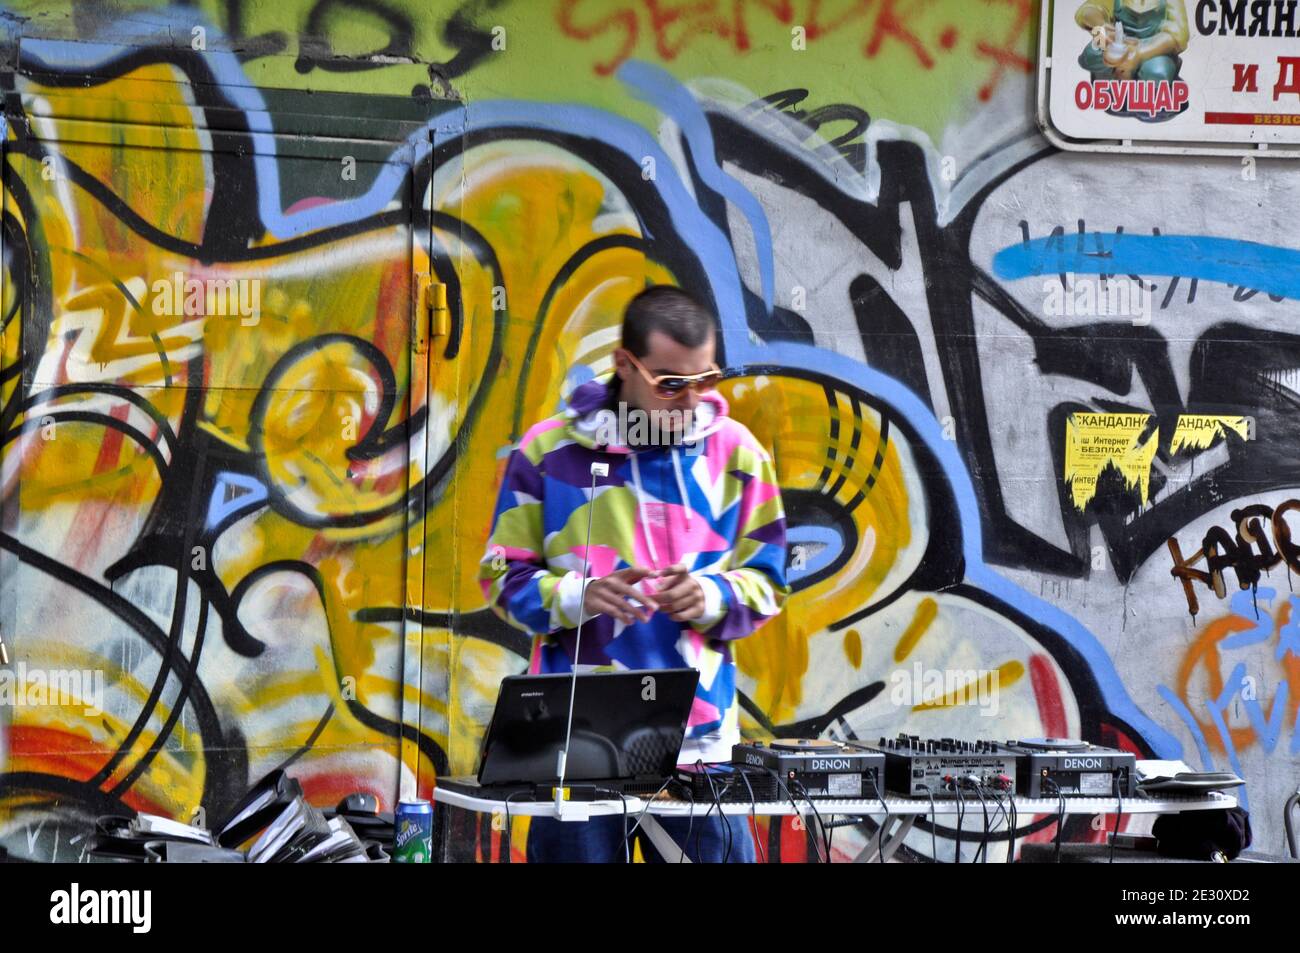 Lone DJ in vestito colorato che si esibisce dal vivo in un improvvisato DJ setup da graffiti murale per le strade durante il "Sofia respira" festival estivo di strada a Sofia Bulgaria Europa orientale Agosto 2010 Foto Stock